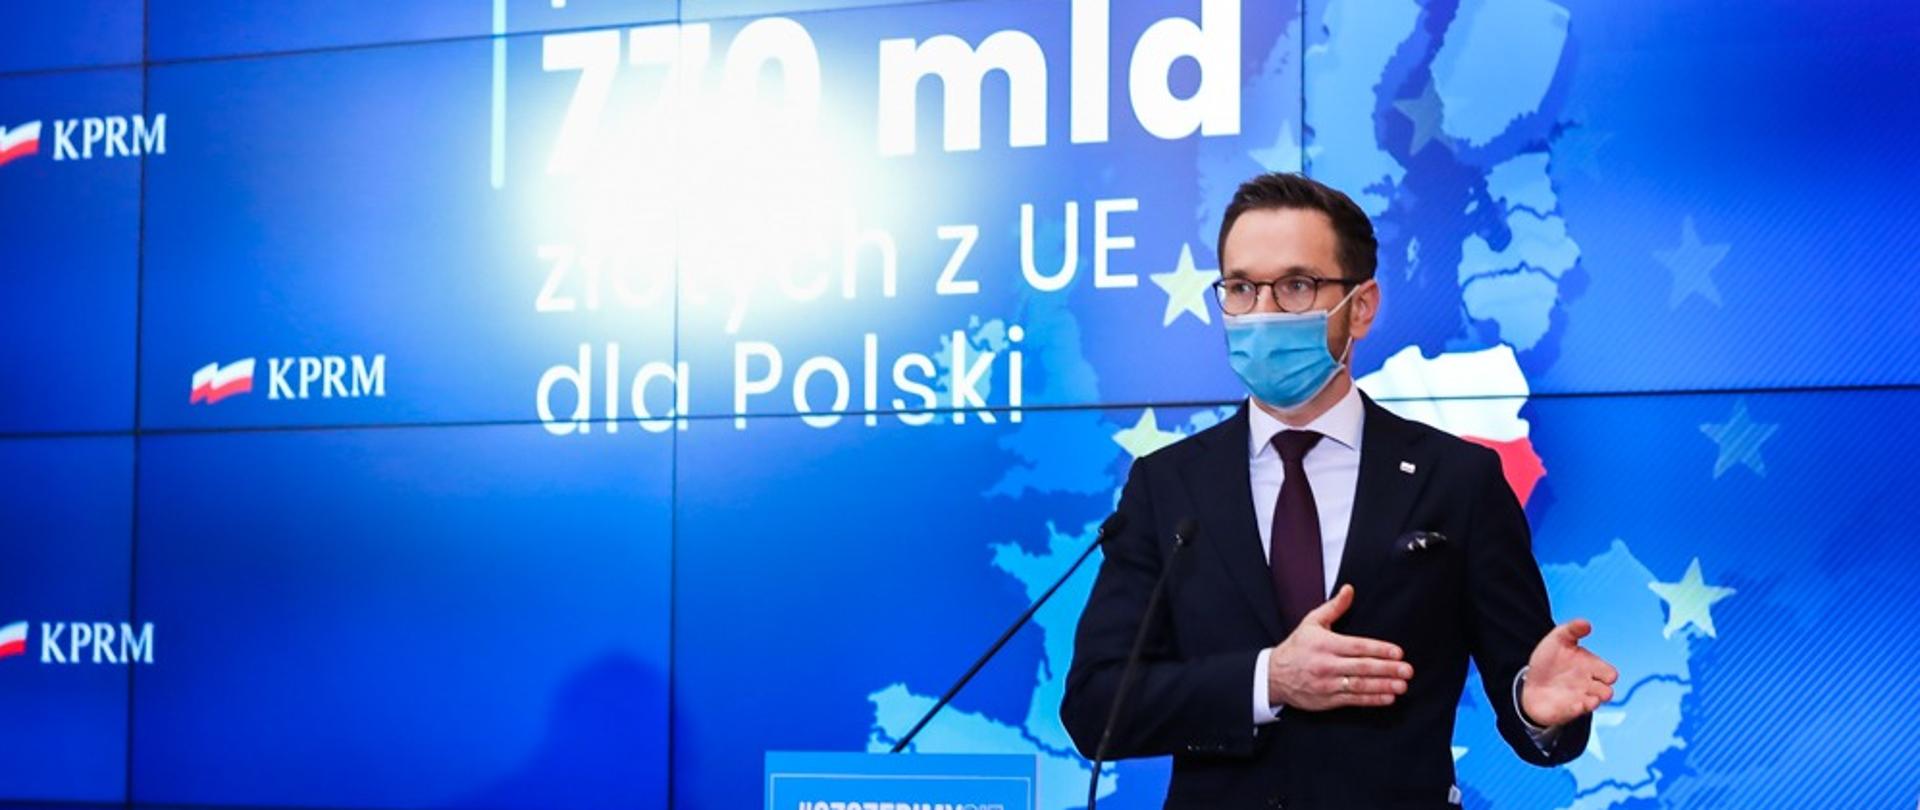 Wiceminister Waldemar Buda stoi w maseczce przed mównicą. Za plecami ekran z napisem: "Ponad 770 mld złotych z UE dla Polski".